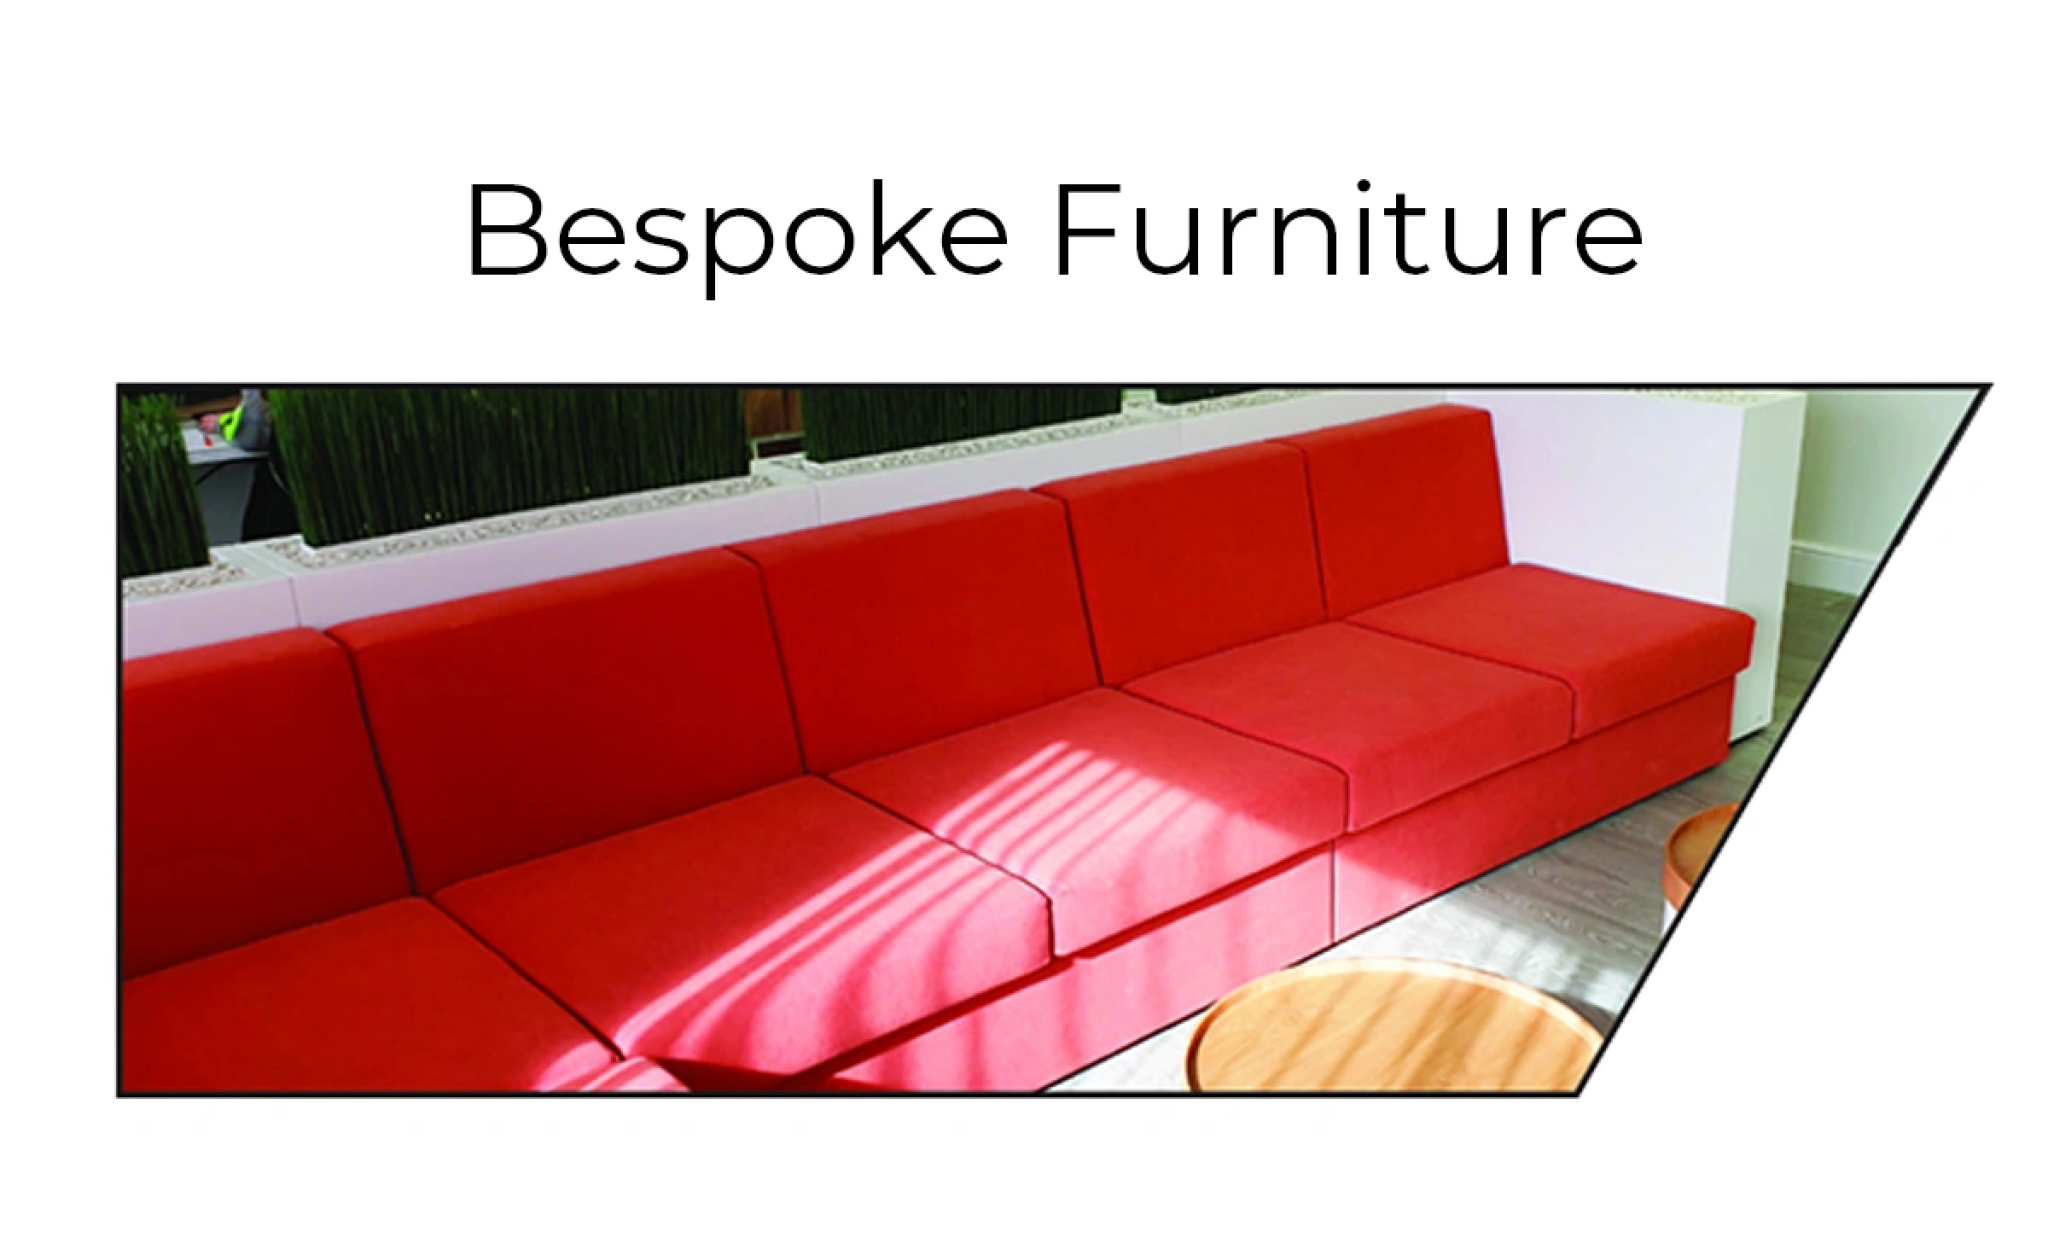 Bespoke Furniture mobile compressed.png